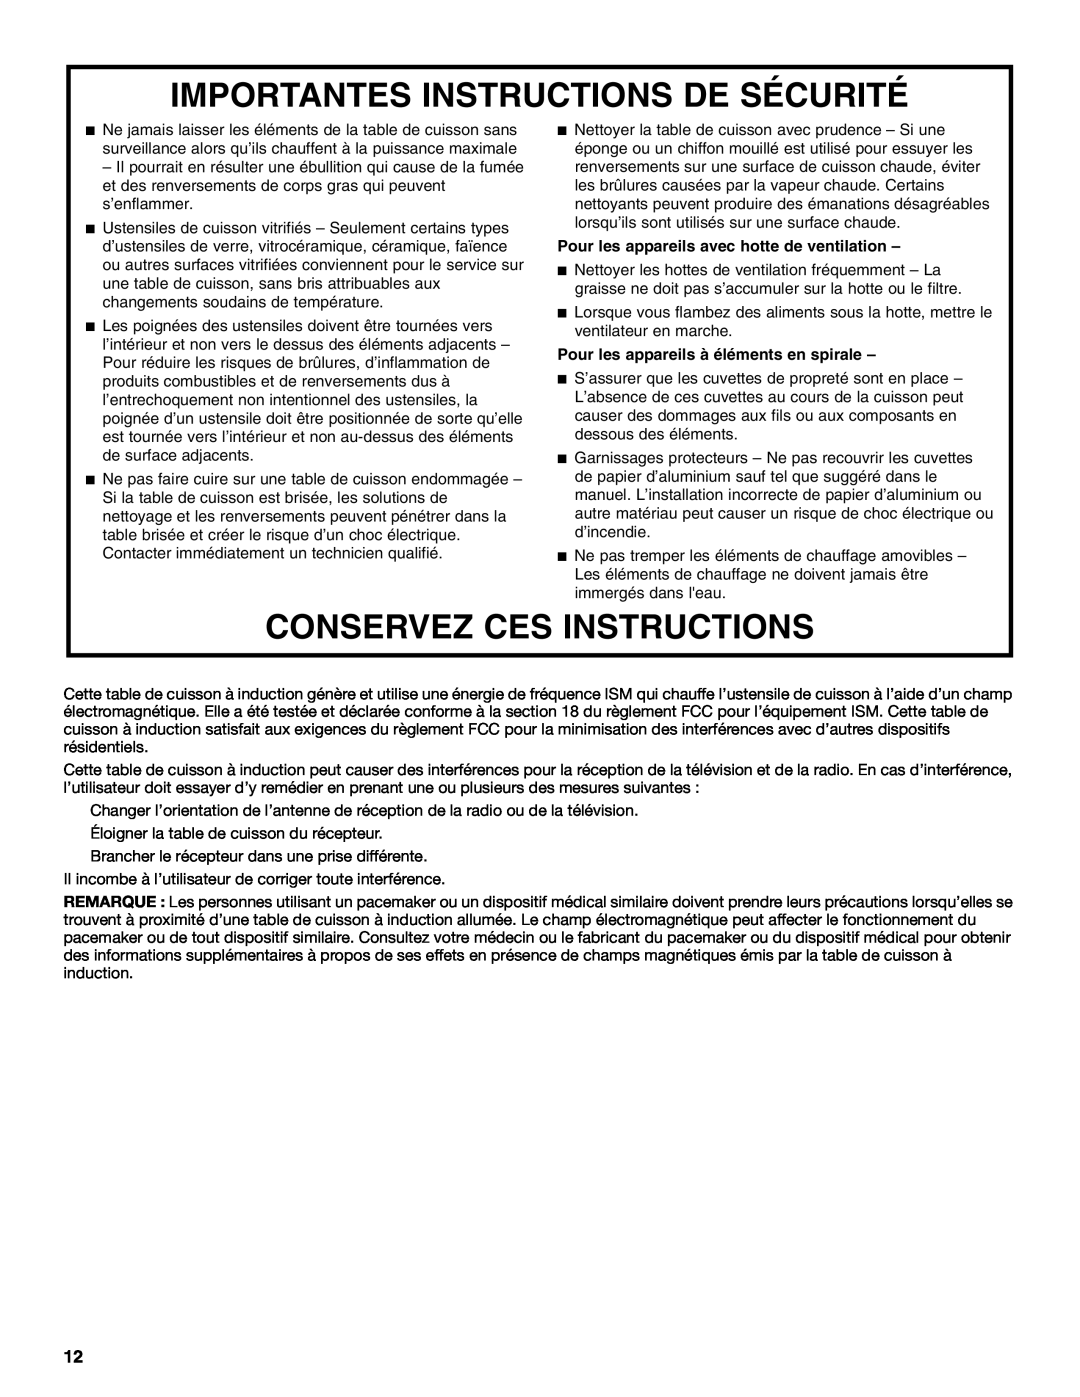 Whirlpool GCI3061XB manual Importantes Instructions De Sécurité, Conservez Ces Instructions 